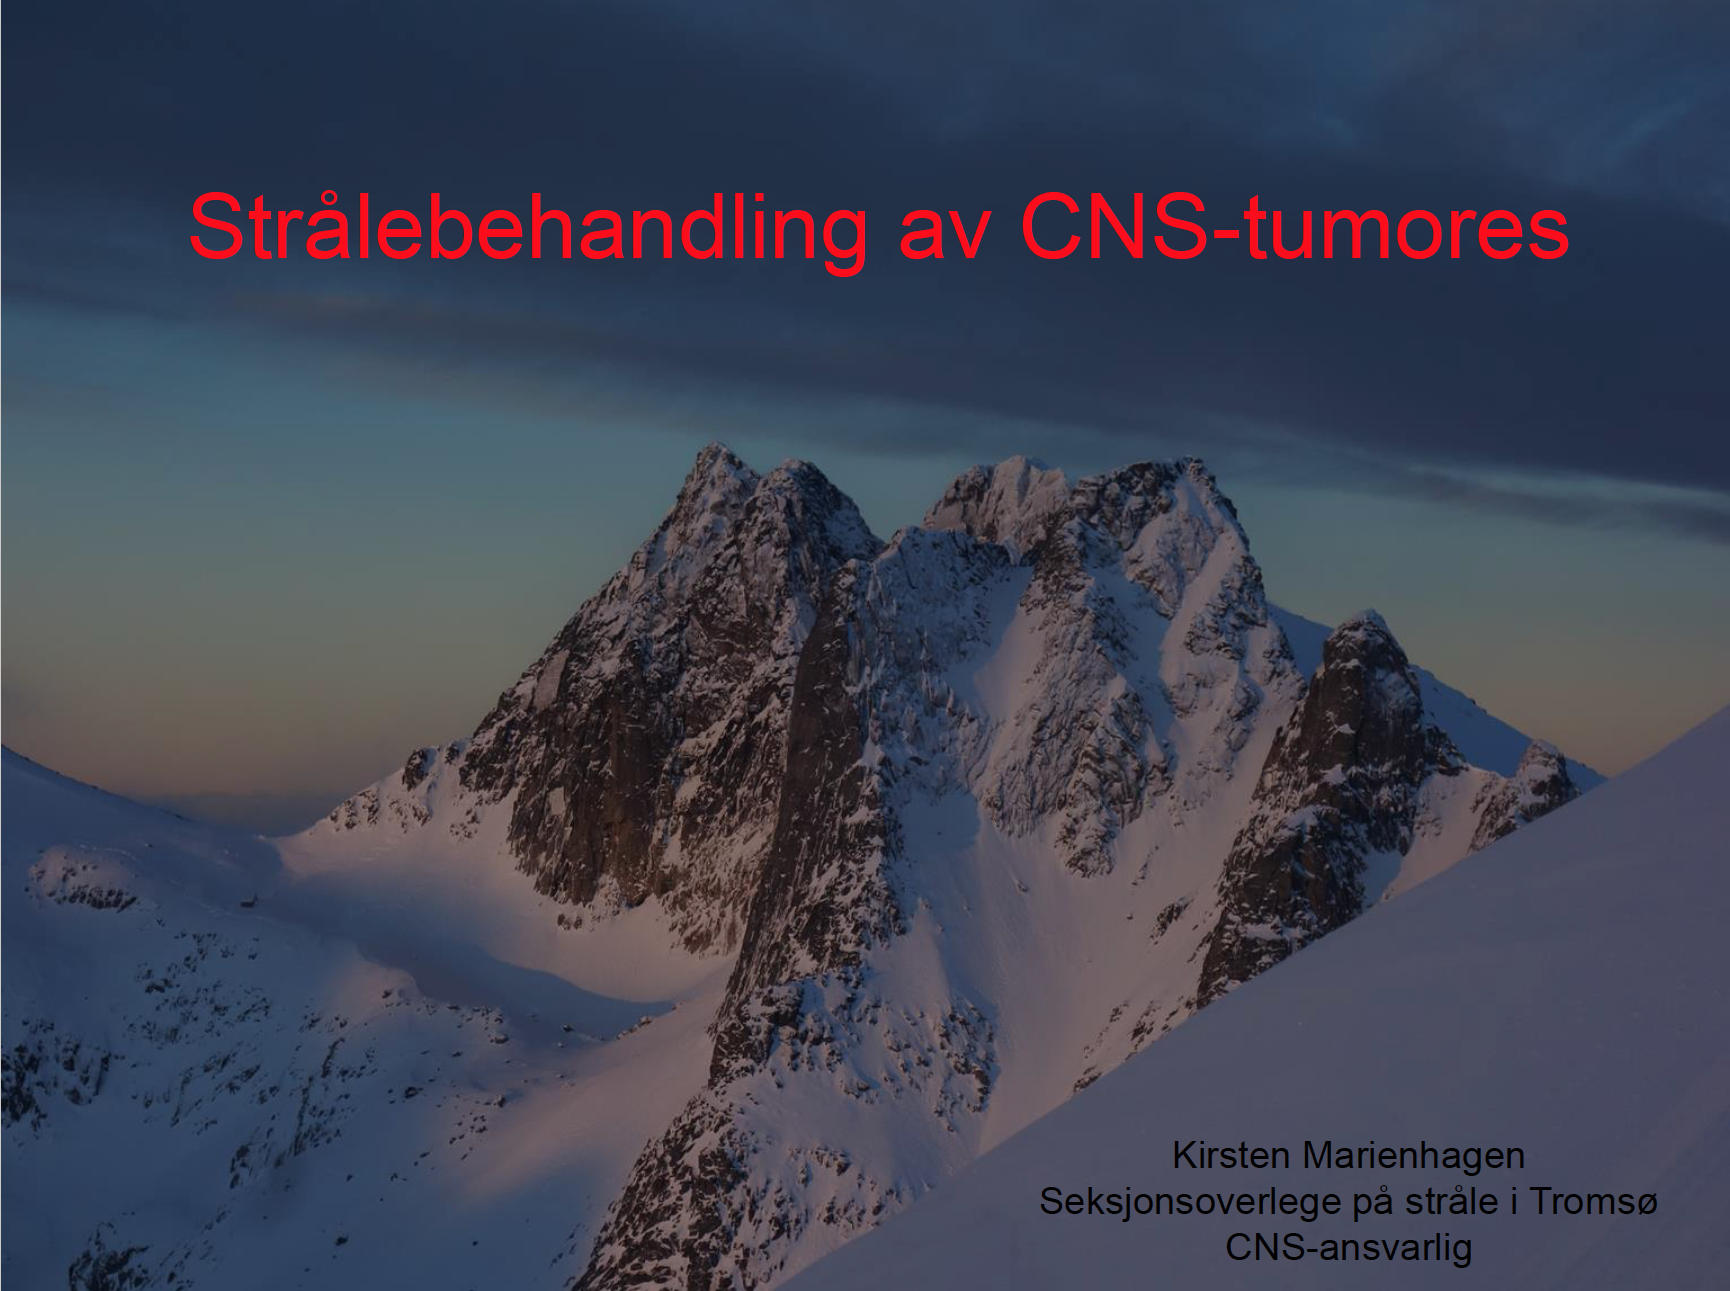 Stråleteknikk ved CNS tumores, ved Kirsten Marienhagen